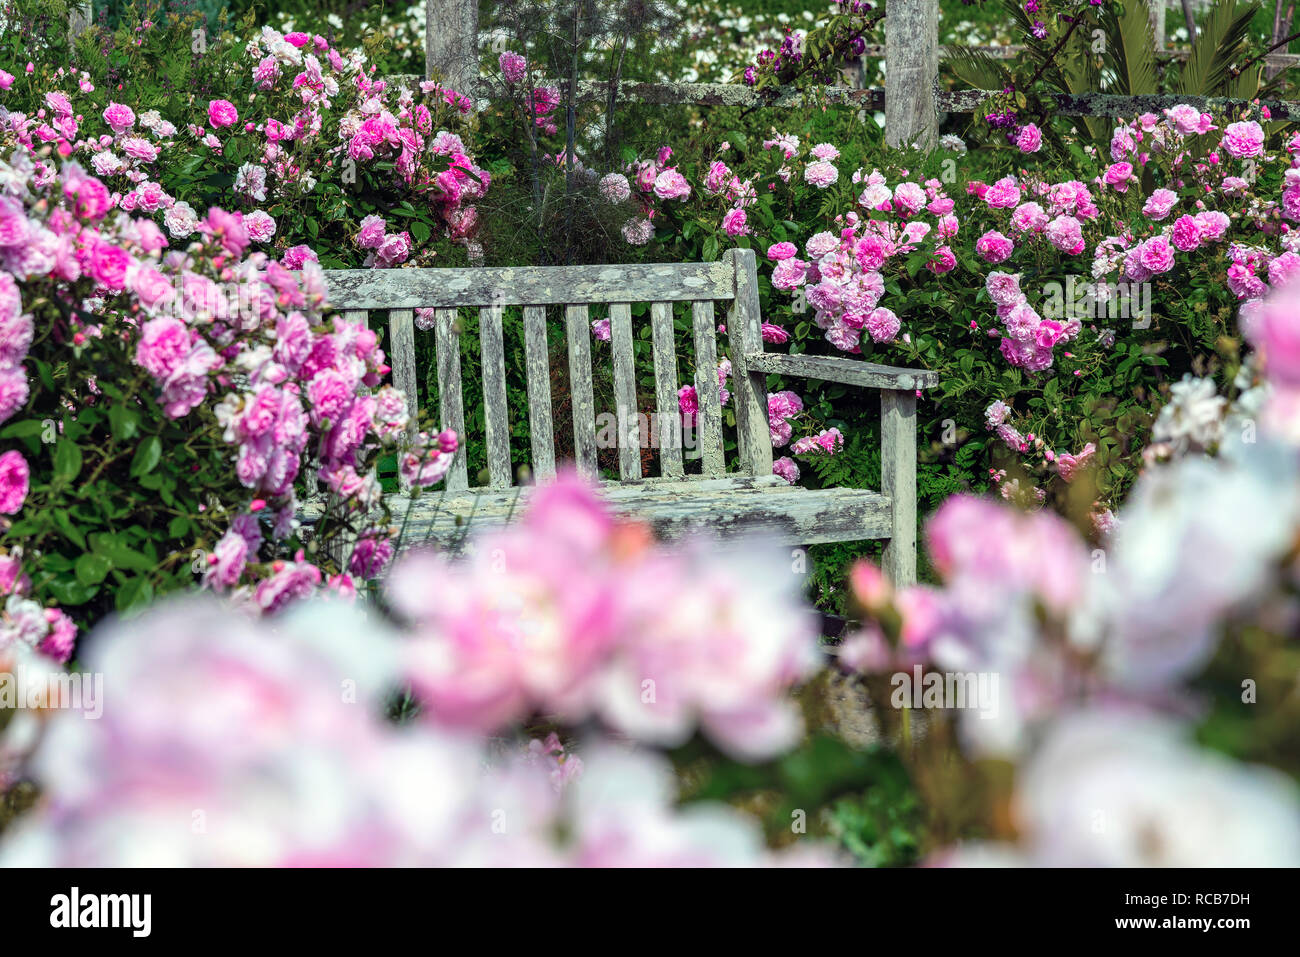 Vecchia panchina da giardino circondato da rosa rose fiorite in un tradizionale giardino inglese, Sussex, a sud dell'Inghilterra, Regno Unito Foto Stock